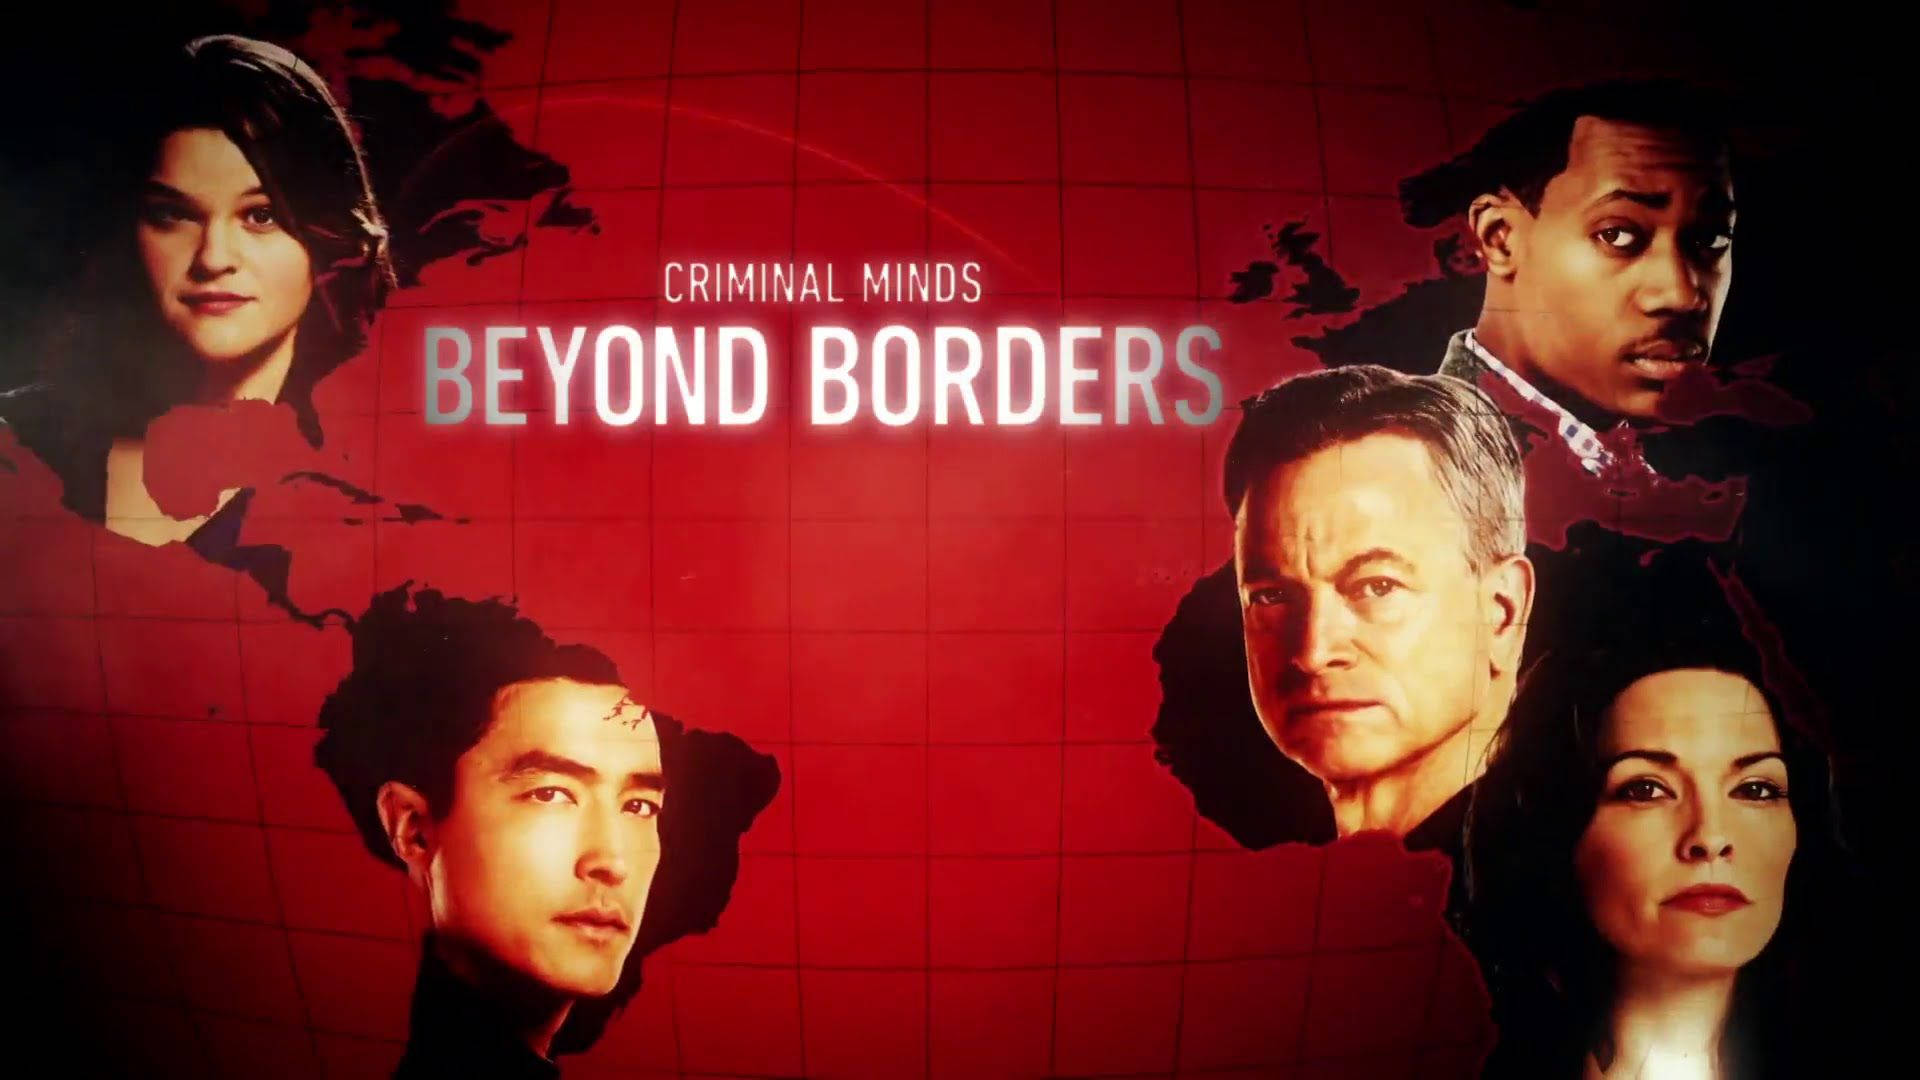 Criminal Minds Spin-off Beyond Borders Background